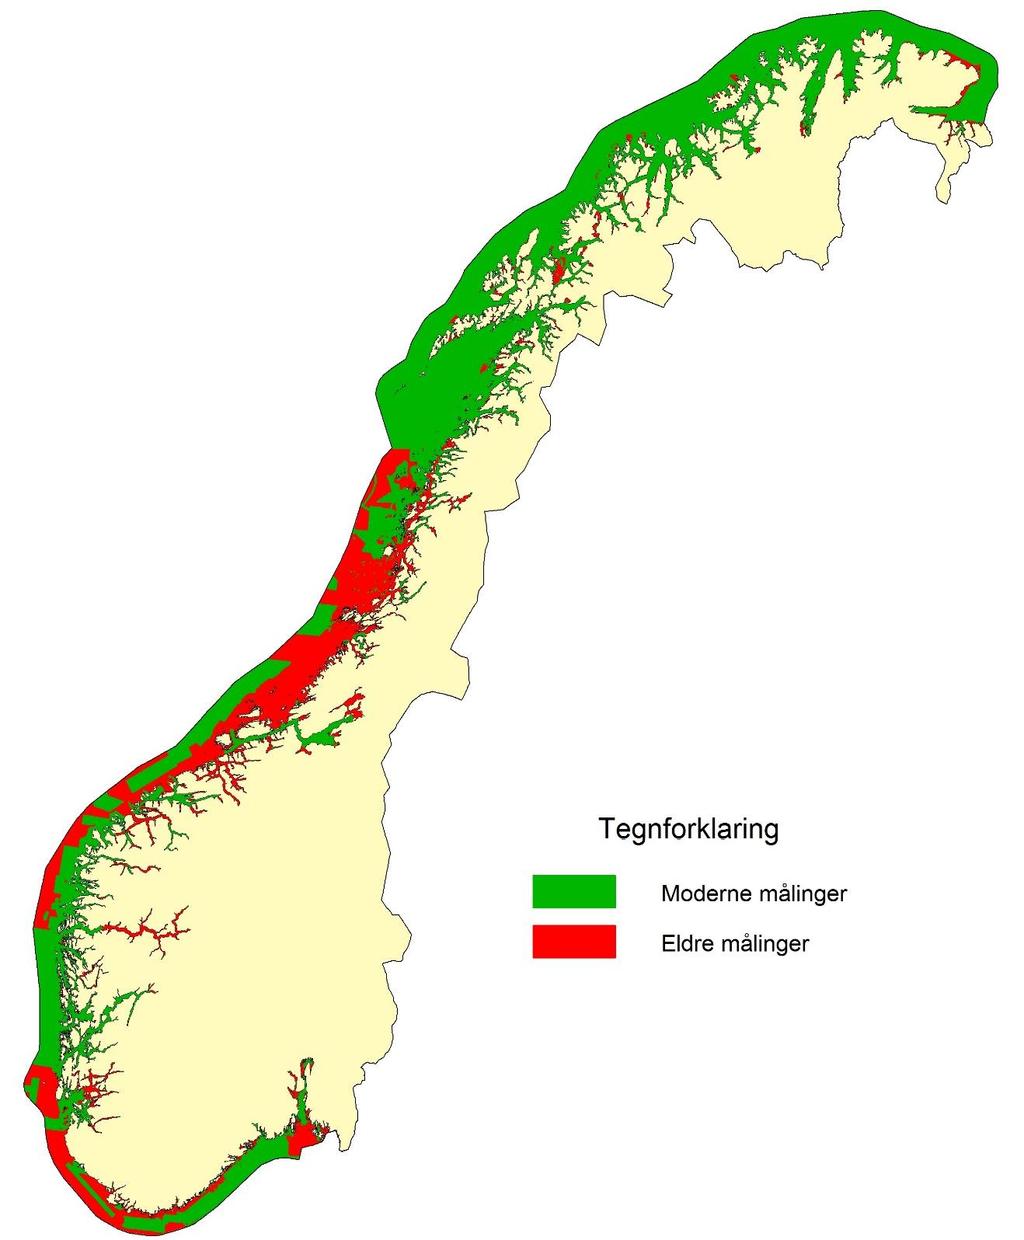 Status for norskekysten 0 20 meters dyp: 65 prosent er ennå ikke dekket med